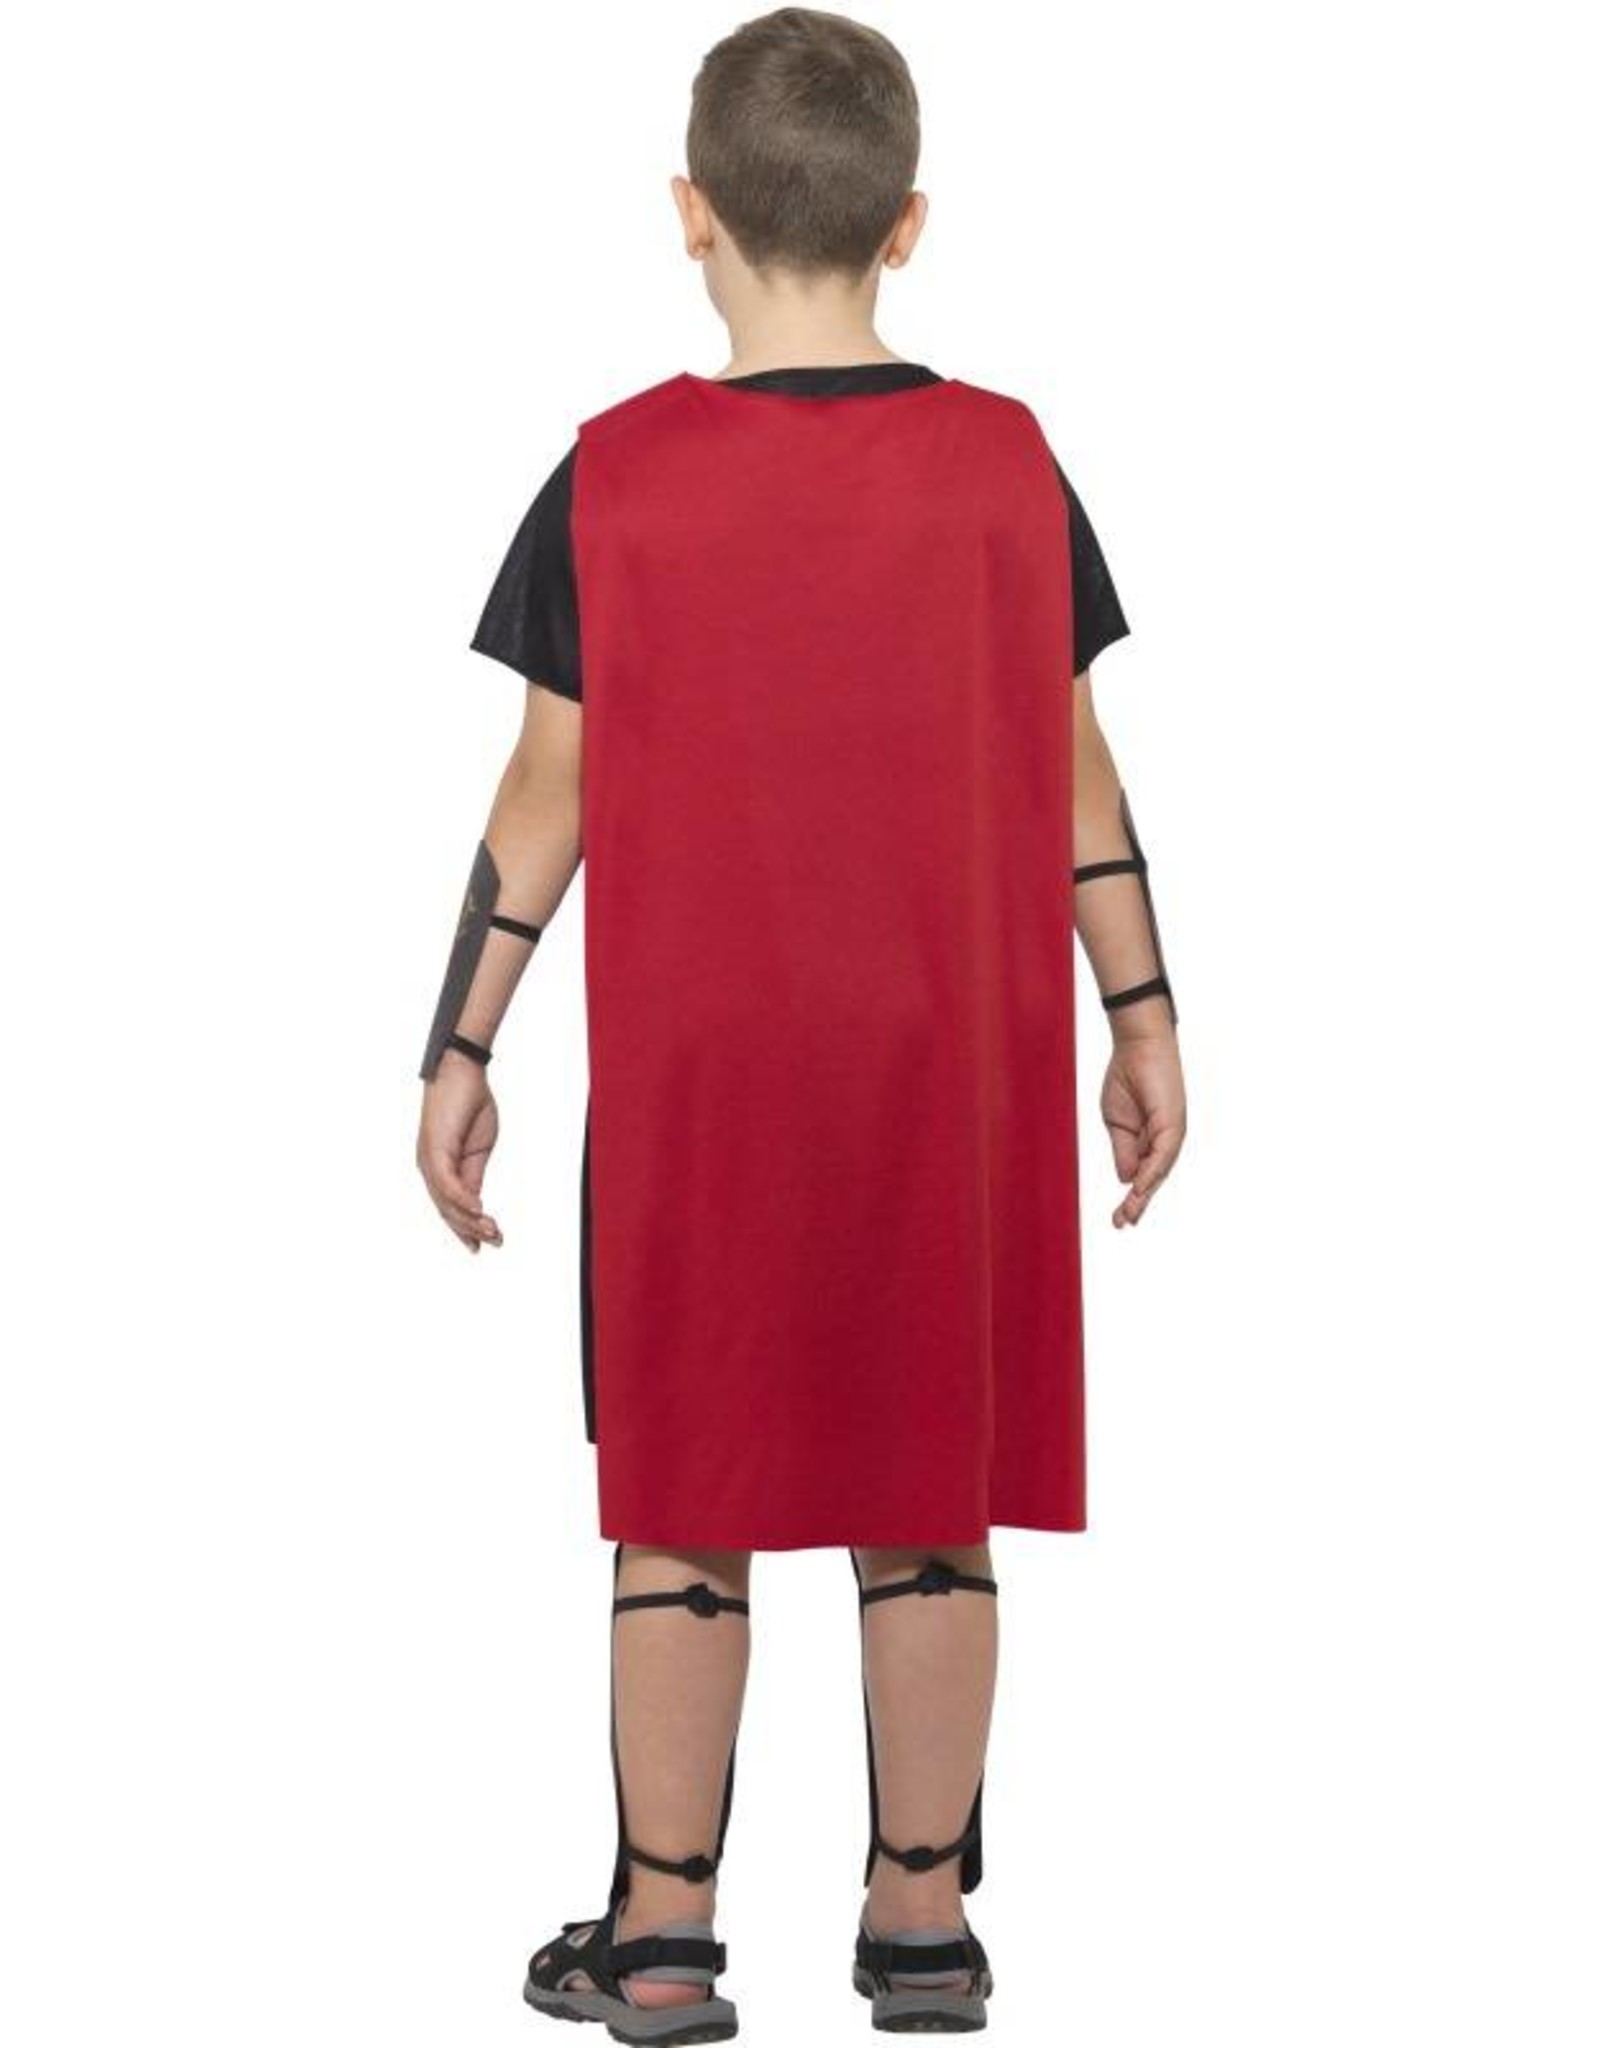 Romeinse Soldaat Kostuum, Kind